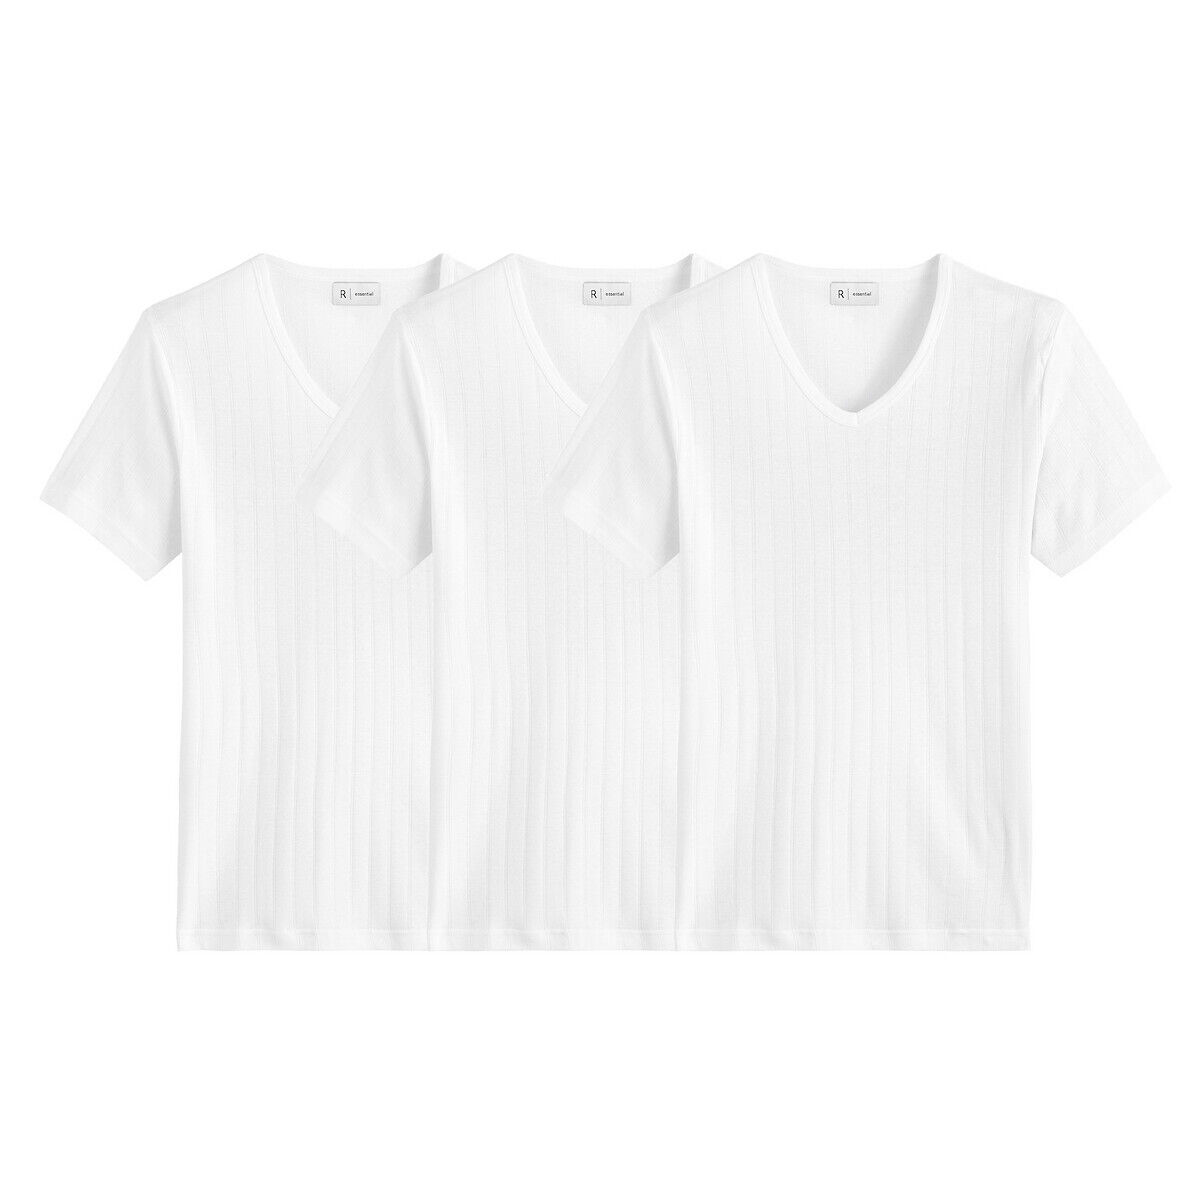 La Redoute Collections Lote de 3 camisolas interiores em algodão bio, decote em V   Branco